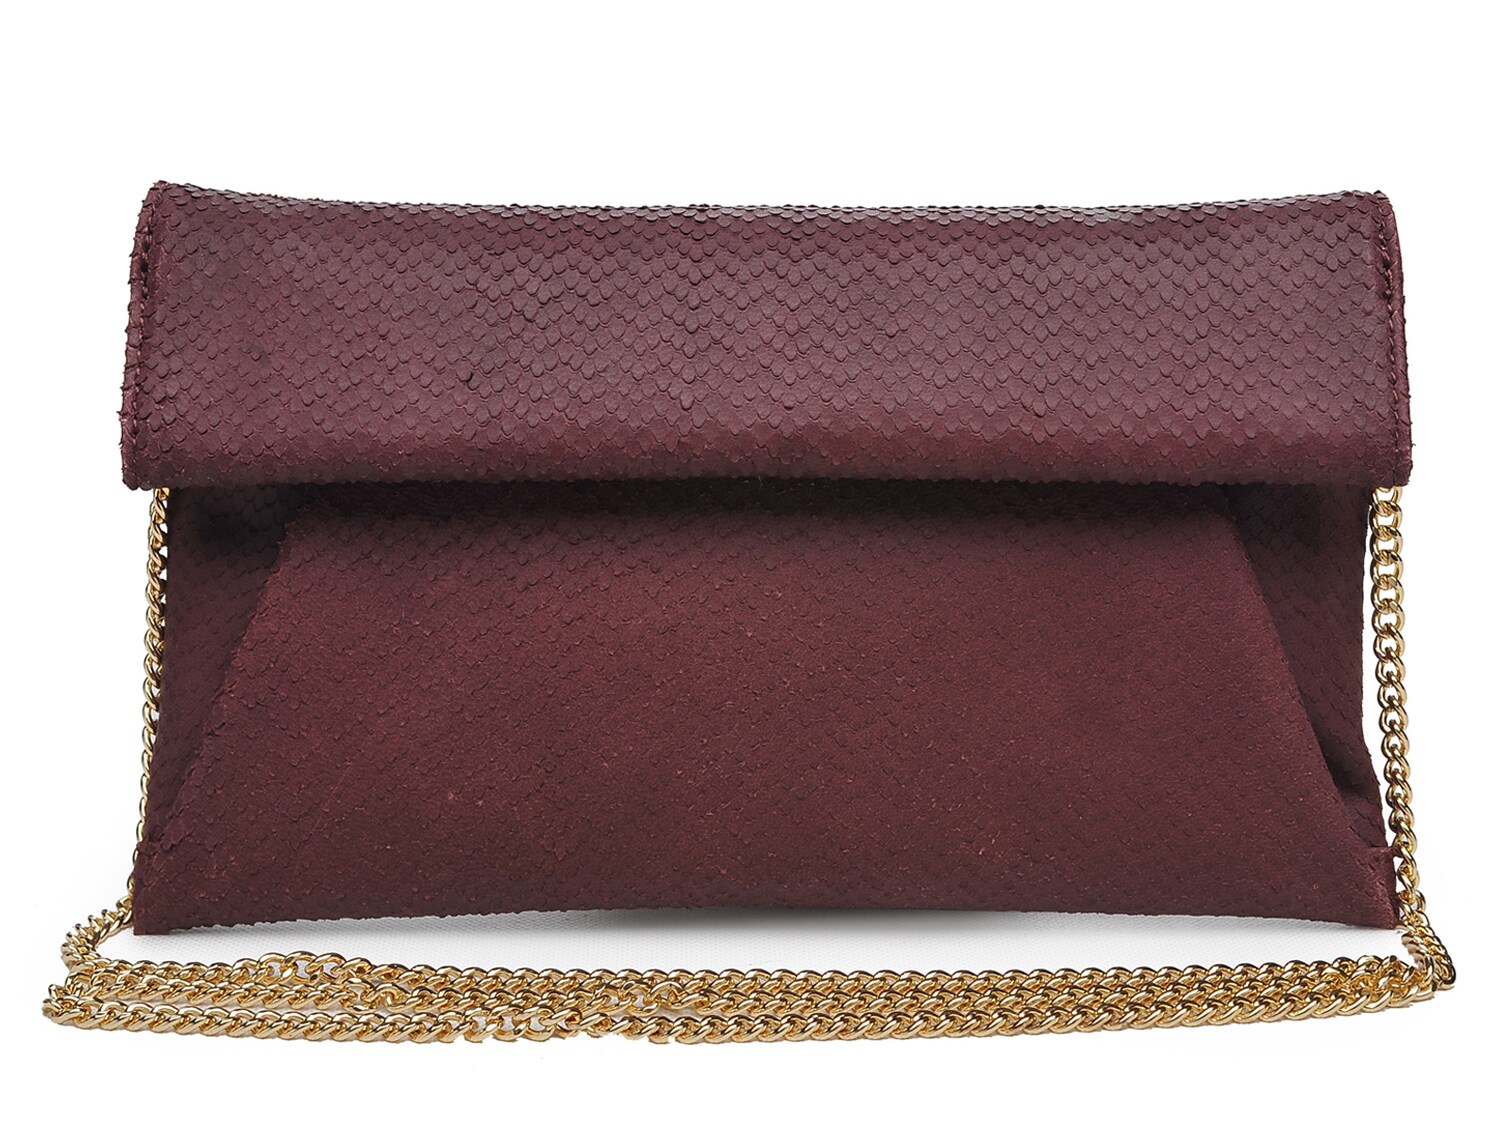 Кожаный клатч Moda Luxe Audrey, цвет Burgundy Snake Print сумка клатч мужская с заклепками с плечевым ремнем